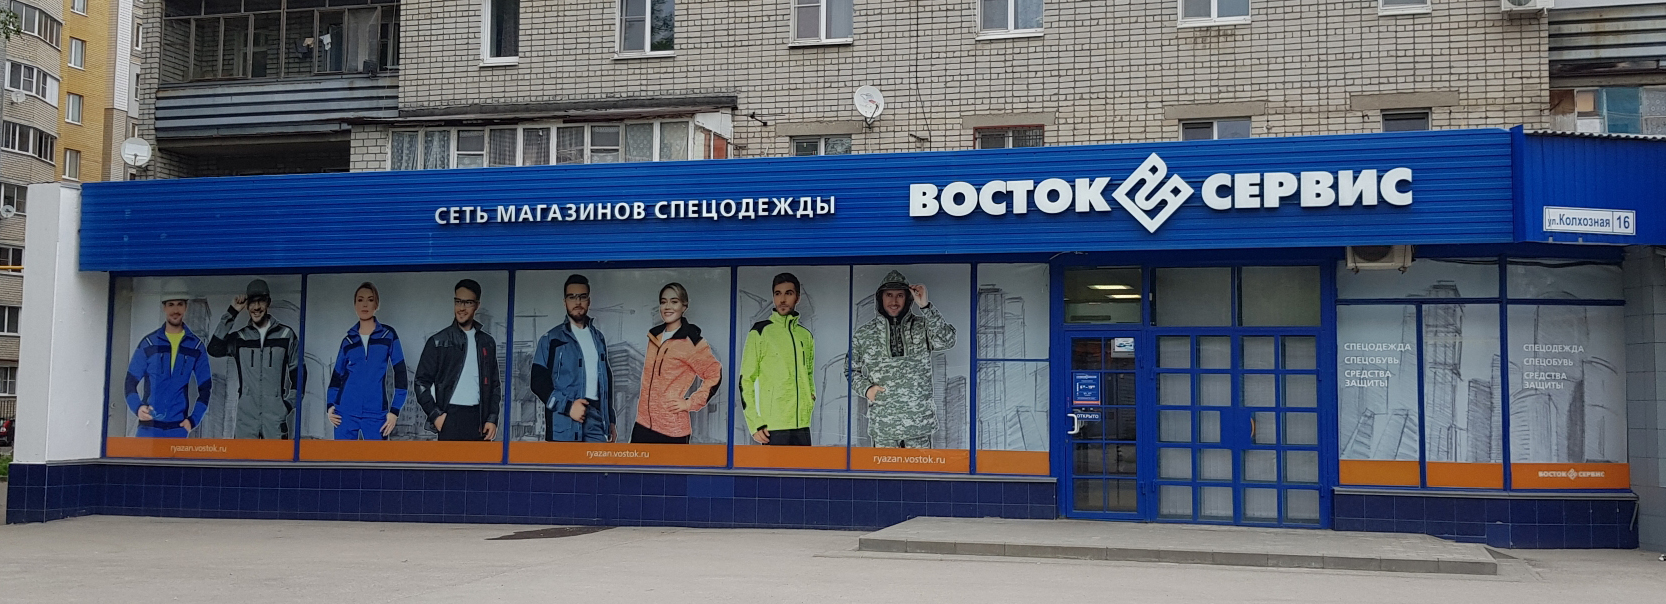 Магазины Спецодежды Город Владимир